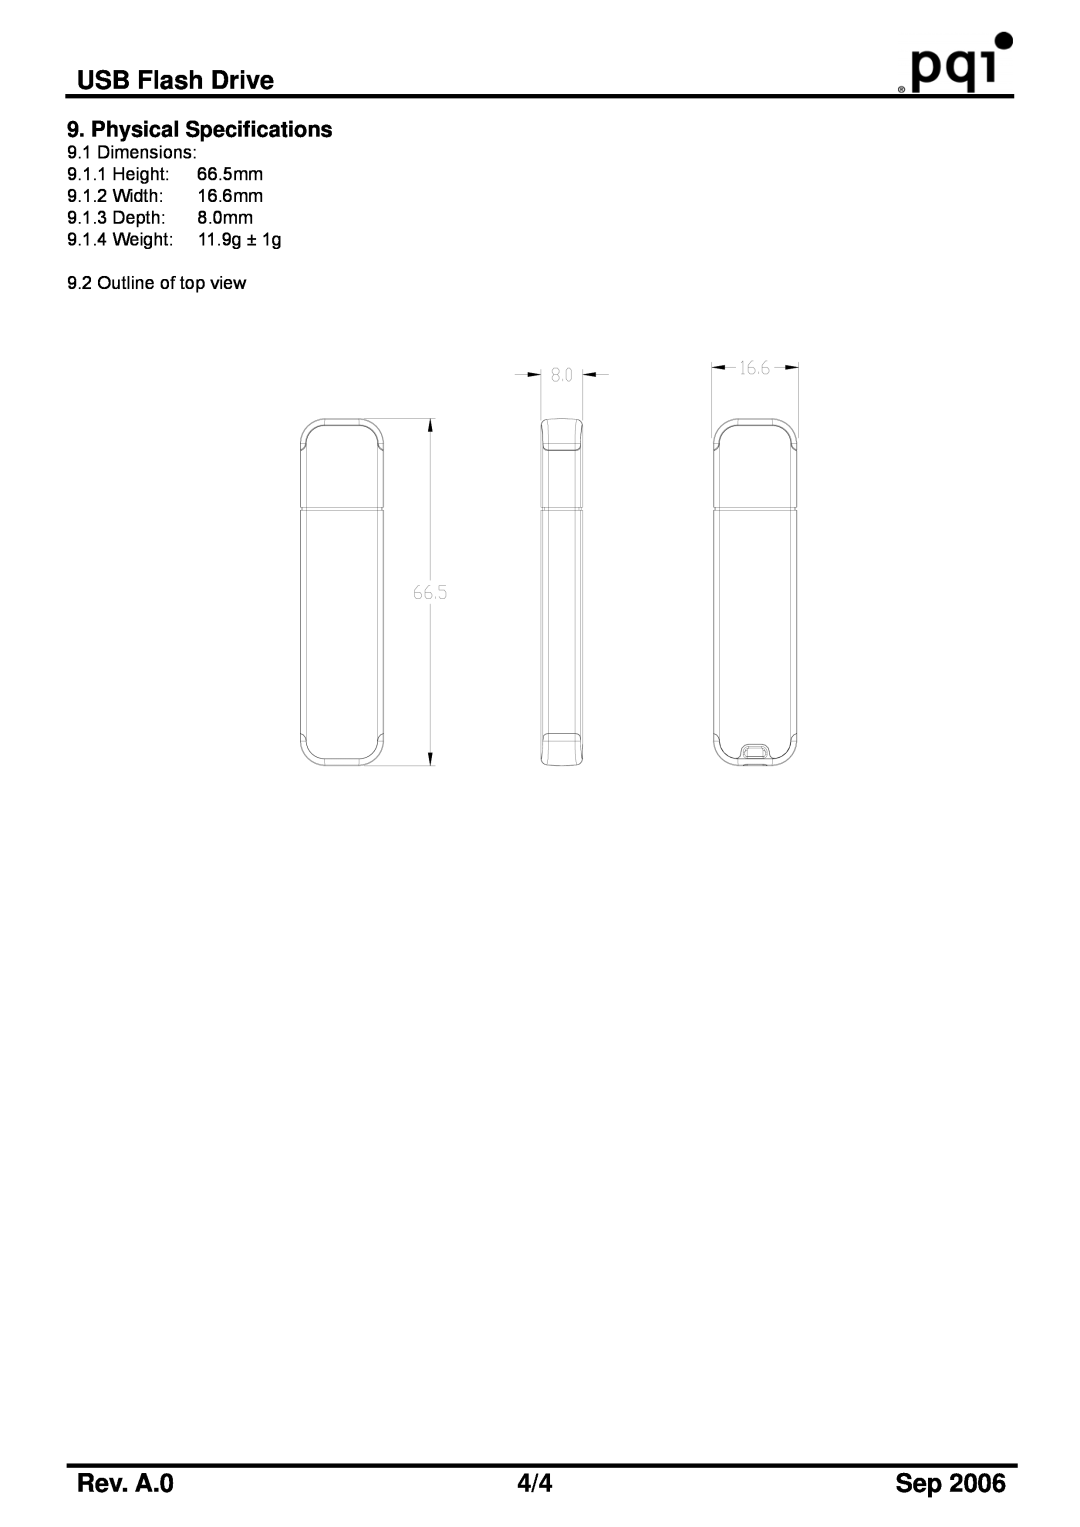 PQI U310 manual USB Flash Drive, Rev. A.0, Dimensions 9.1.1 Height 66.5mm 9.1.2 Width 16.6mm 